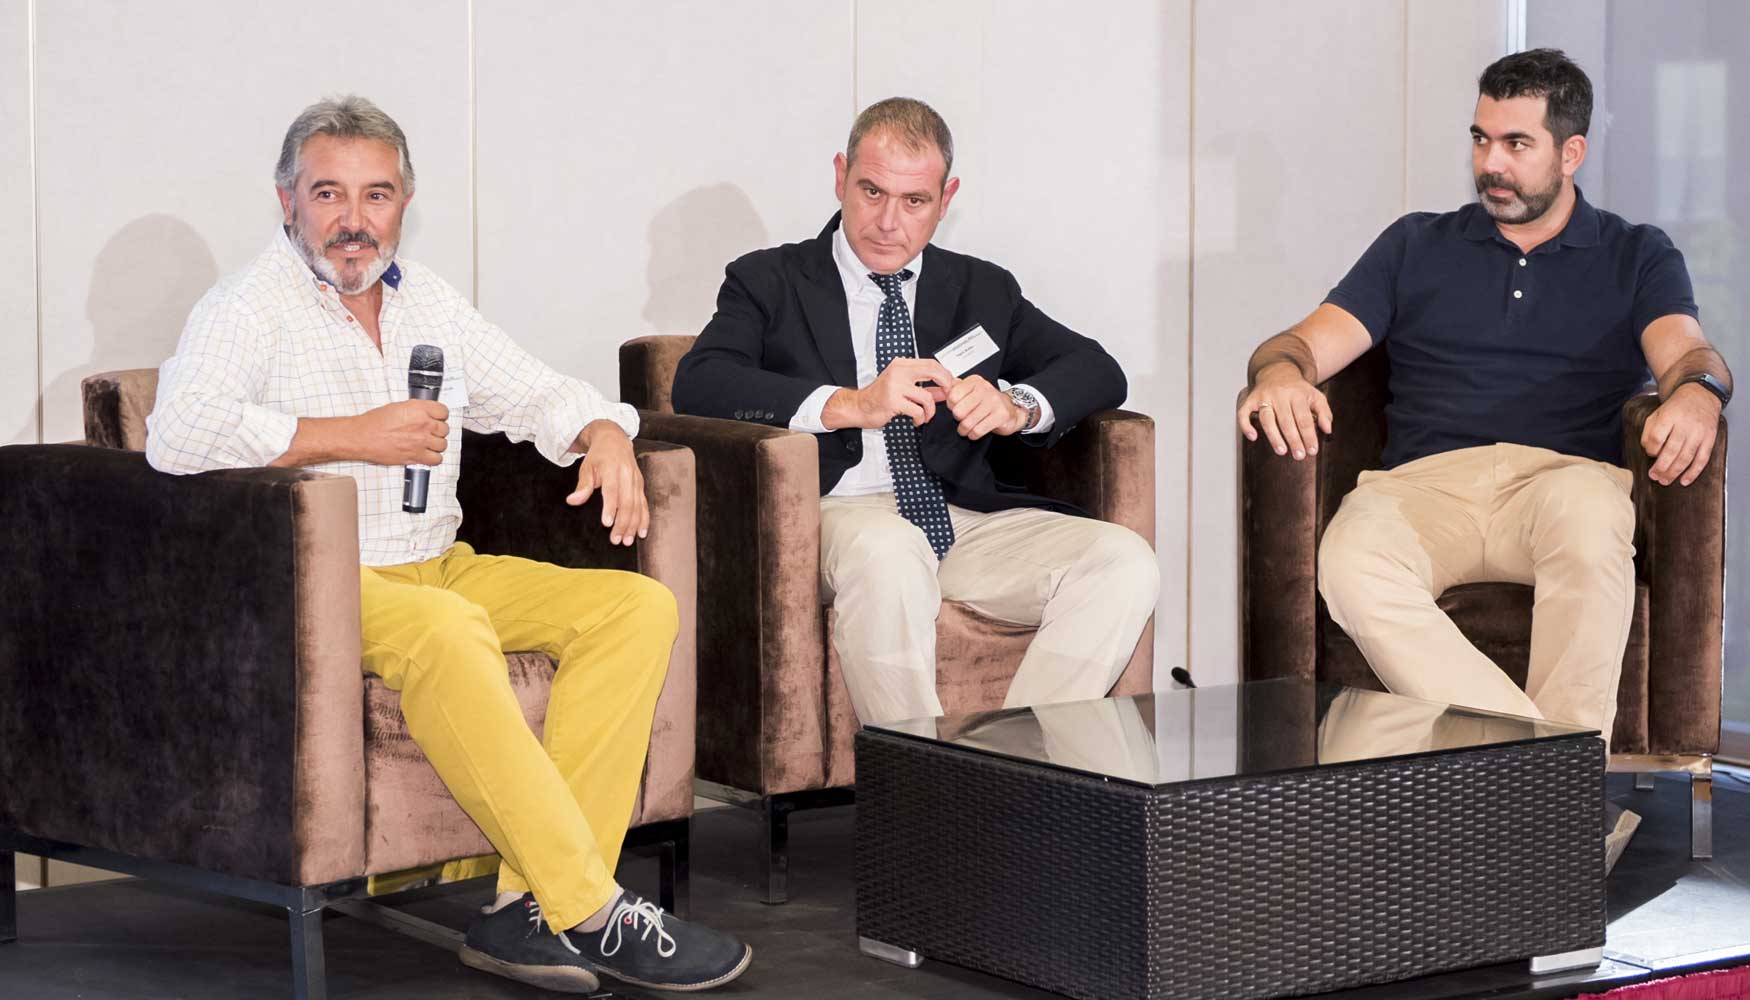 De izquierda a derecha: Fabin Alcudia, presidente de Aedt, Pablo Budia, presidente de Aeded, y Daniel Anka, presidente de Anka Demoliciones...